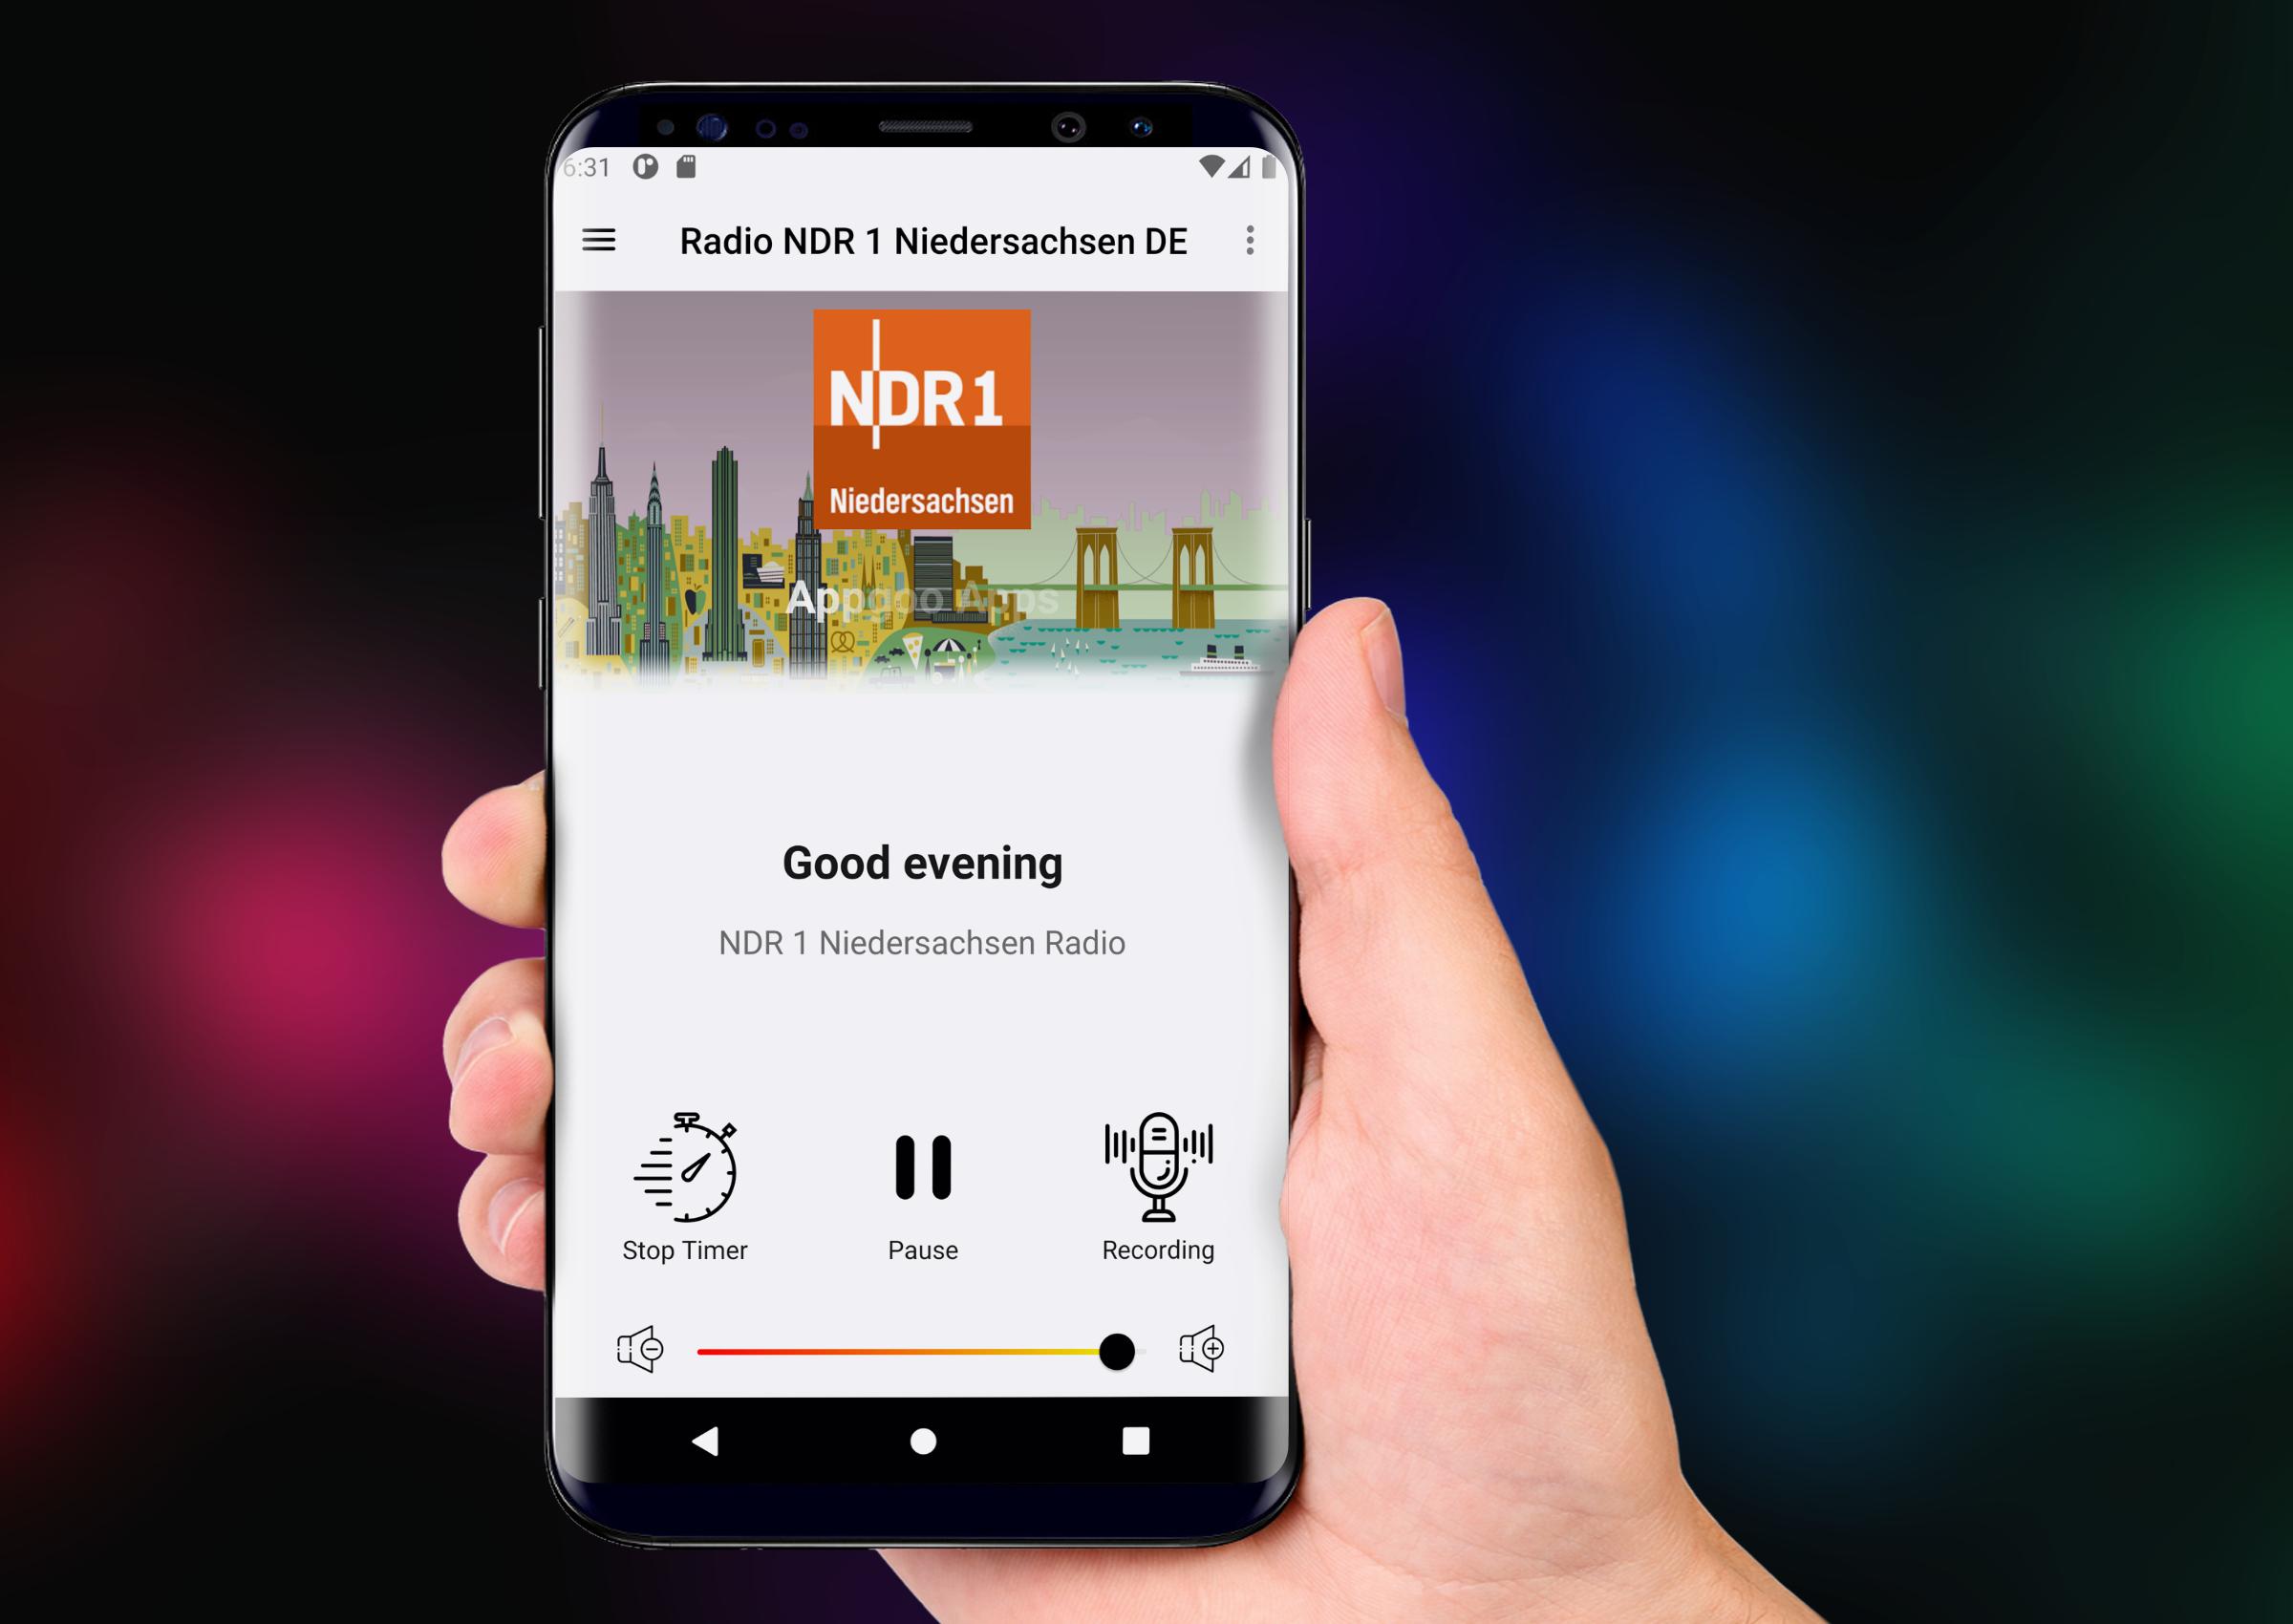 NDR 1 Niedersachsen App Radio DE Kostenlos Online for Android - APK Download